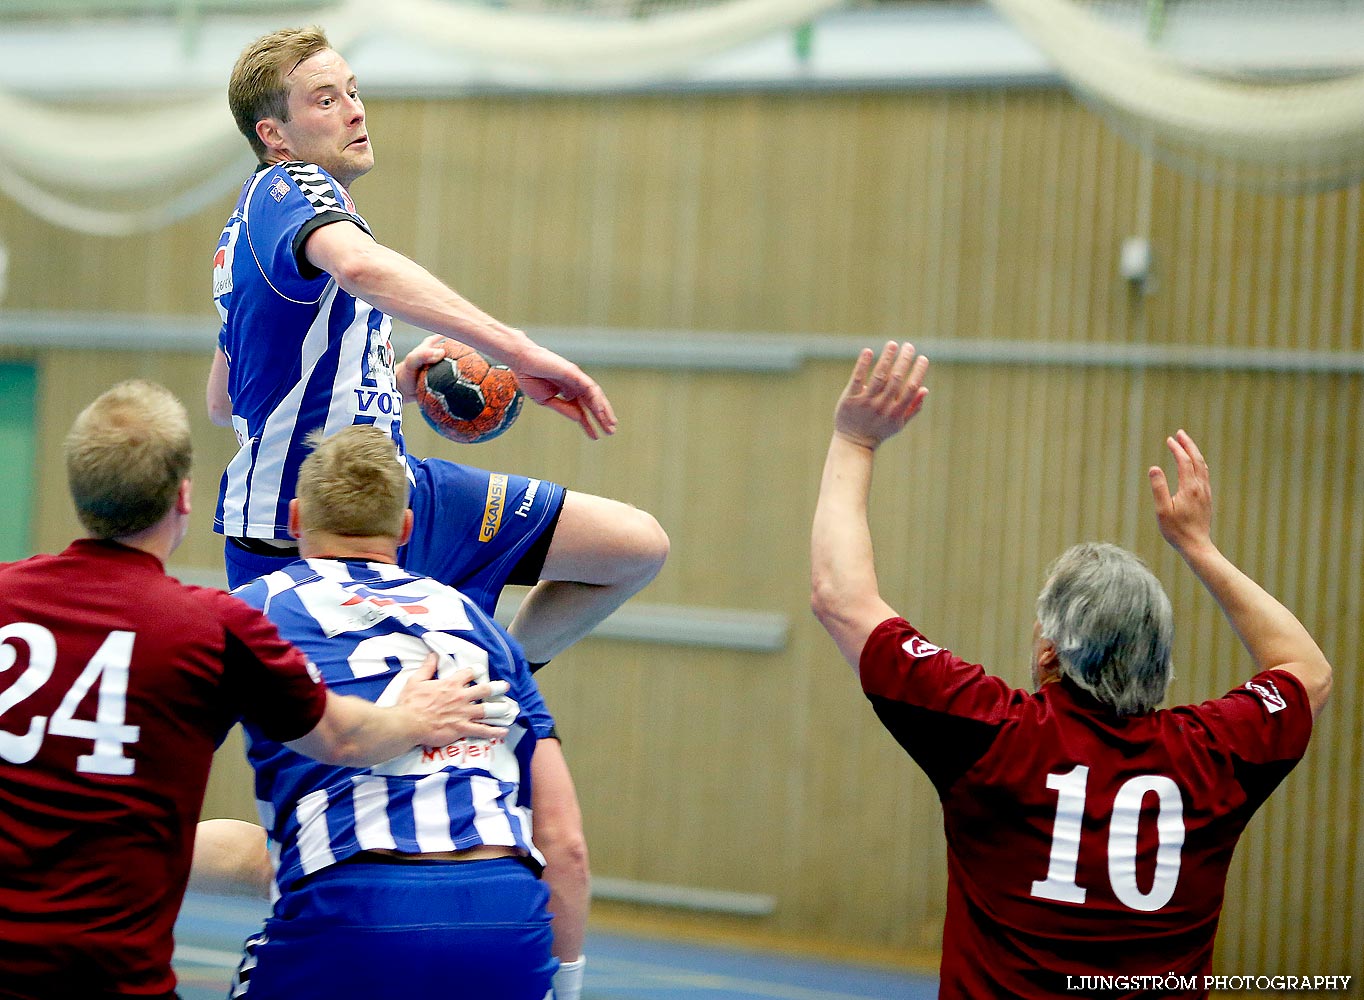 Trim-SM Herrar IFK Skövde HK-GIK Wasaiterna,herr,Arena Skövde,Skövde,Sverige,Handboll,,2014,87362